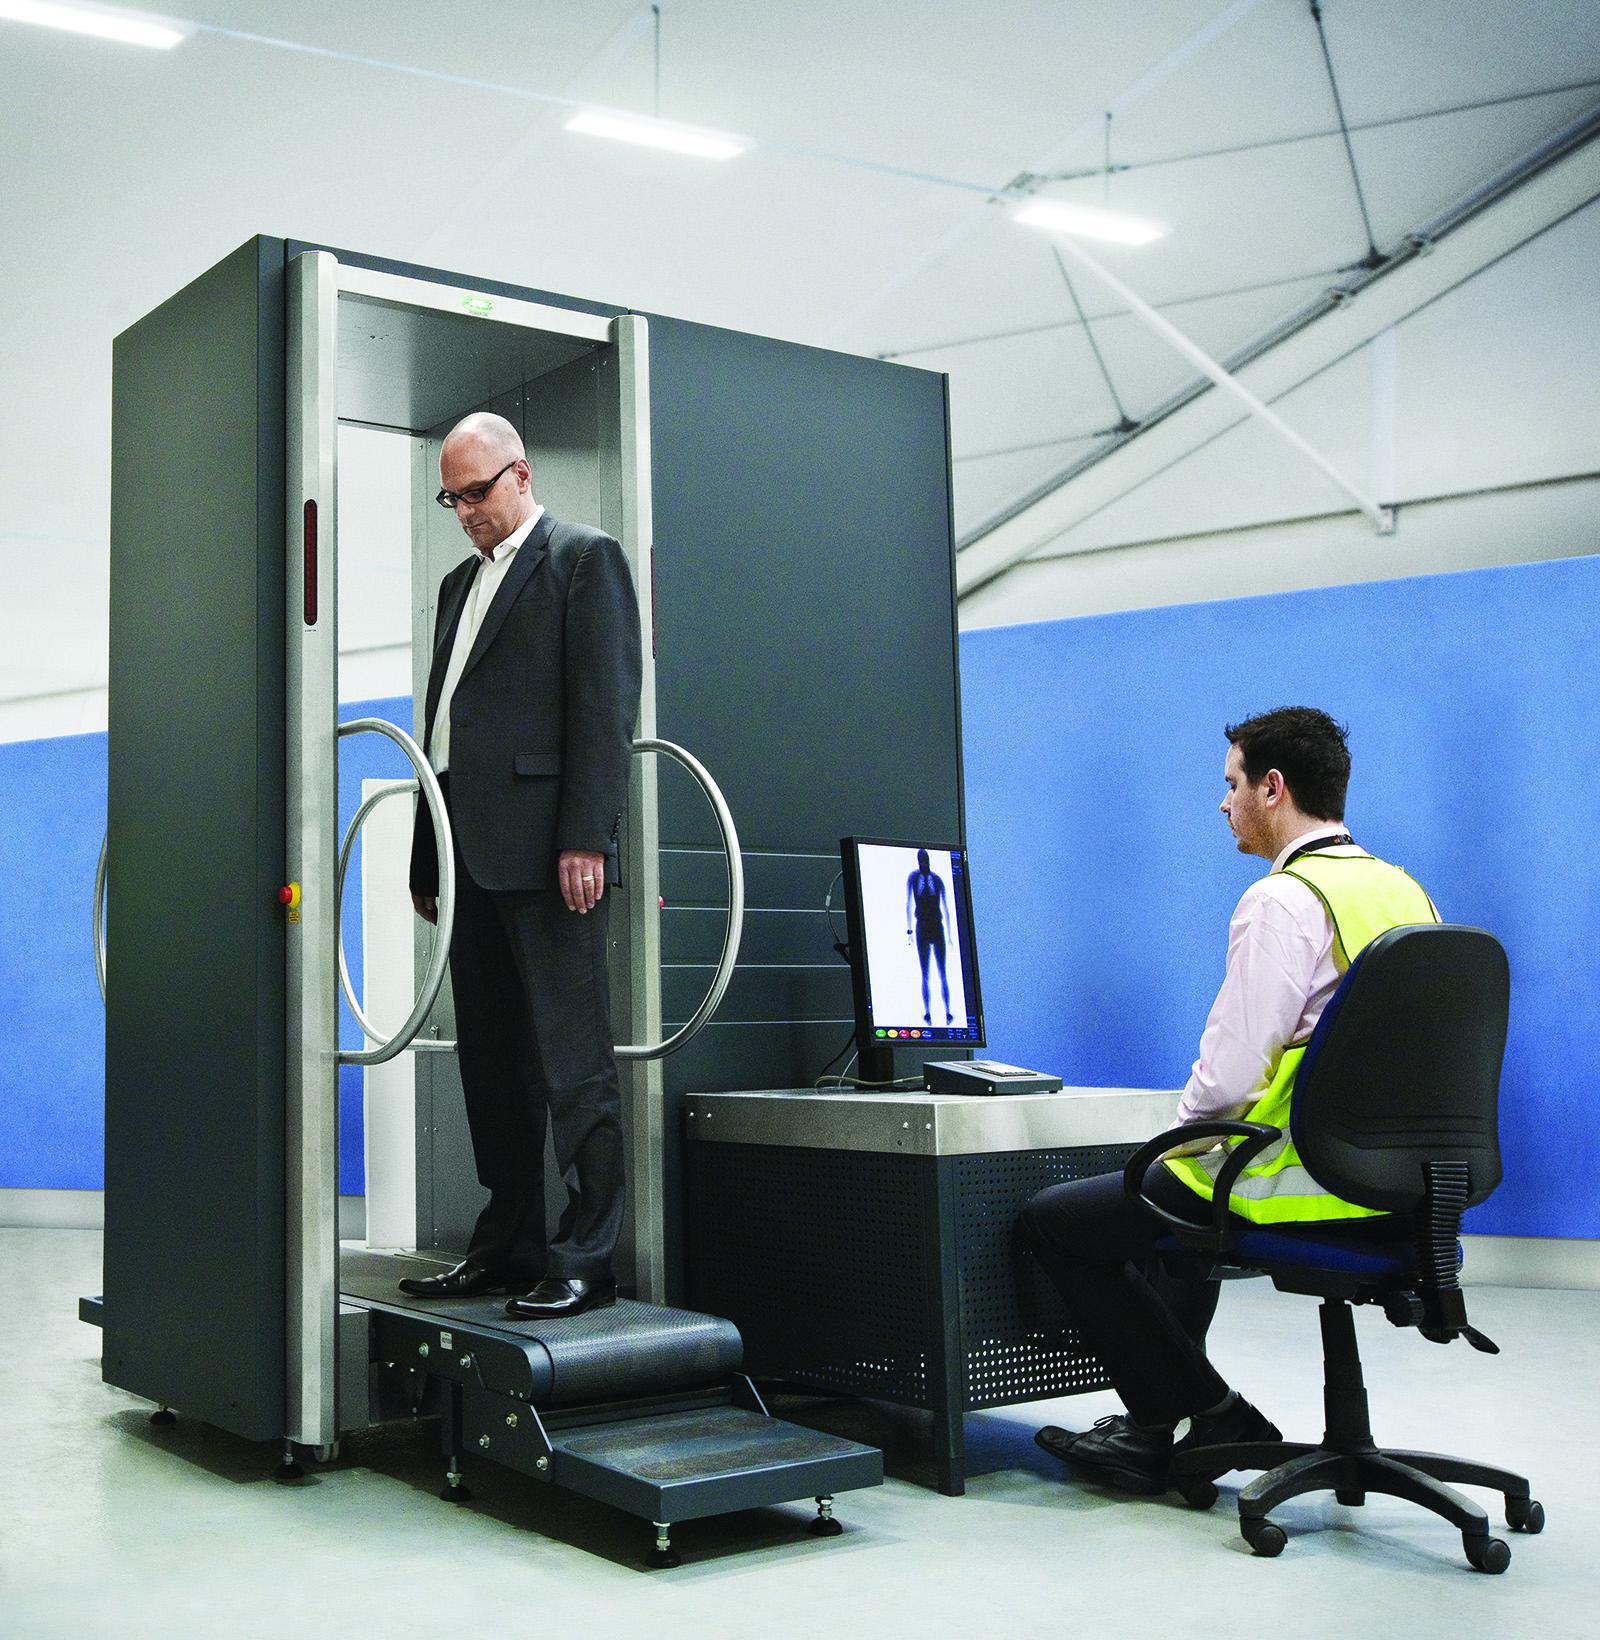 Рентгеновский досмотр. Рентгеновская сканирующая система для персонального досмотра Consys. Рентген аппарат Rapiscan secure 1000. Рентгенотелевизионная система досмотра. B-scan 16hr-LD.